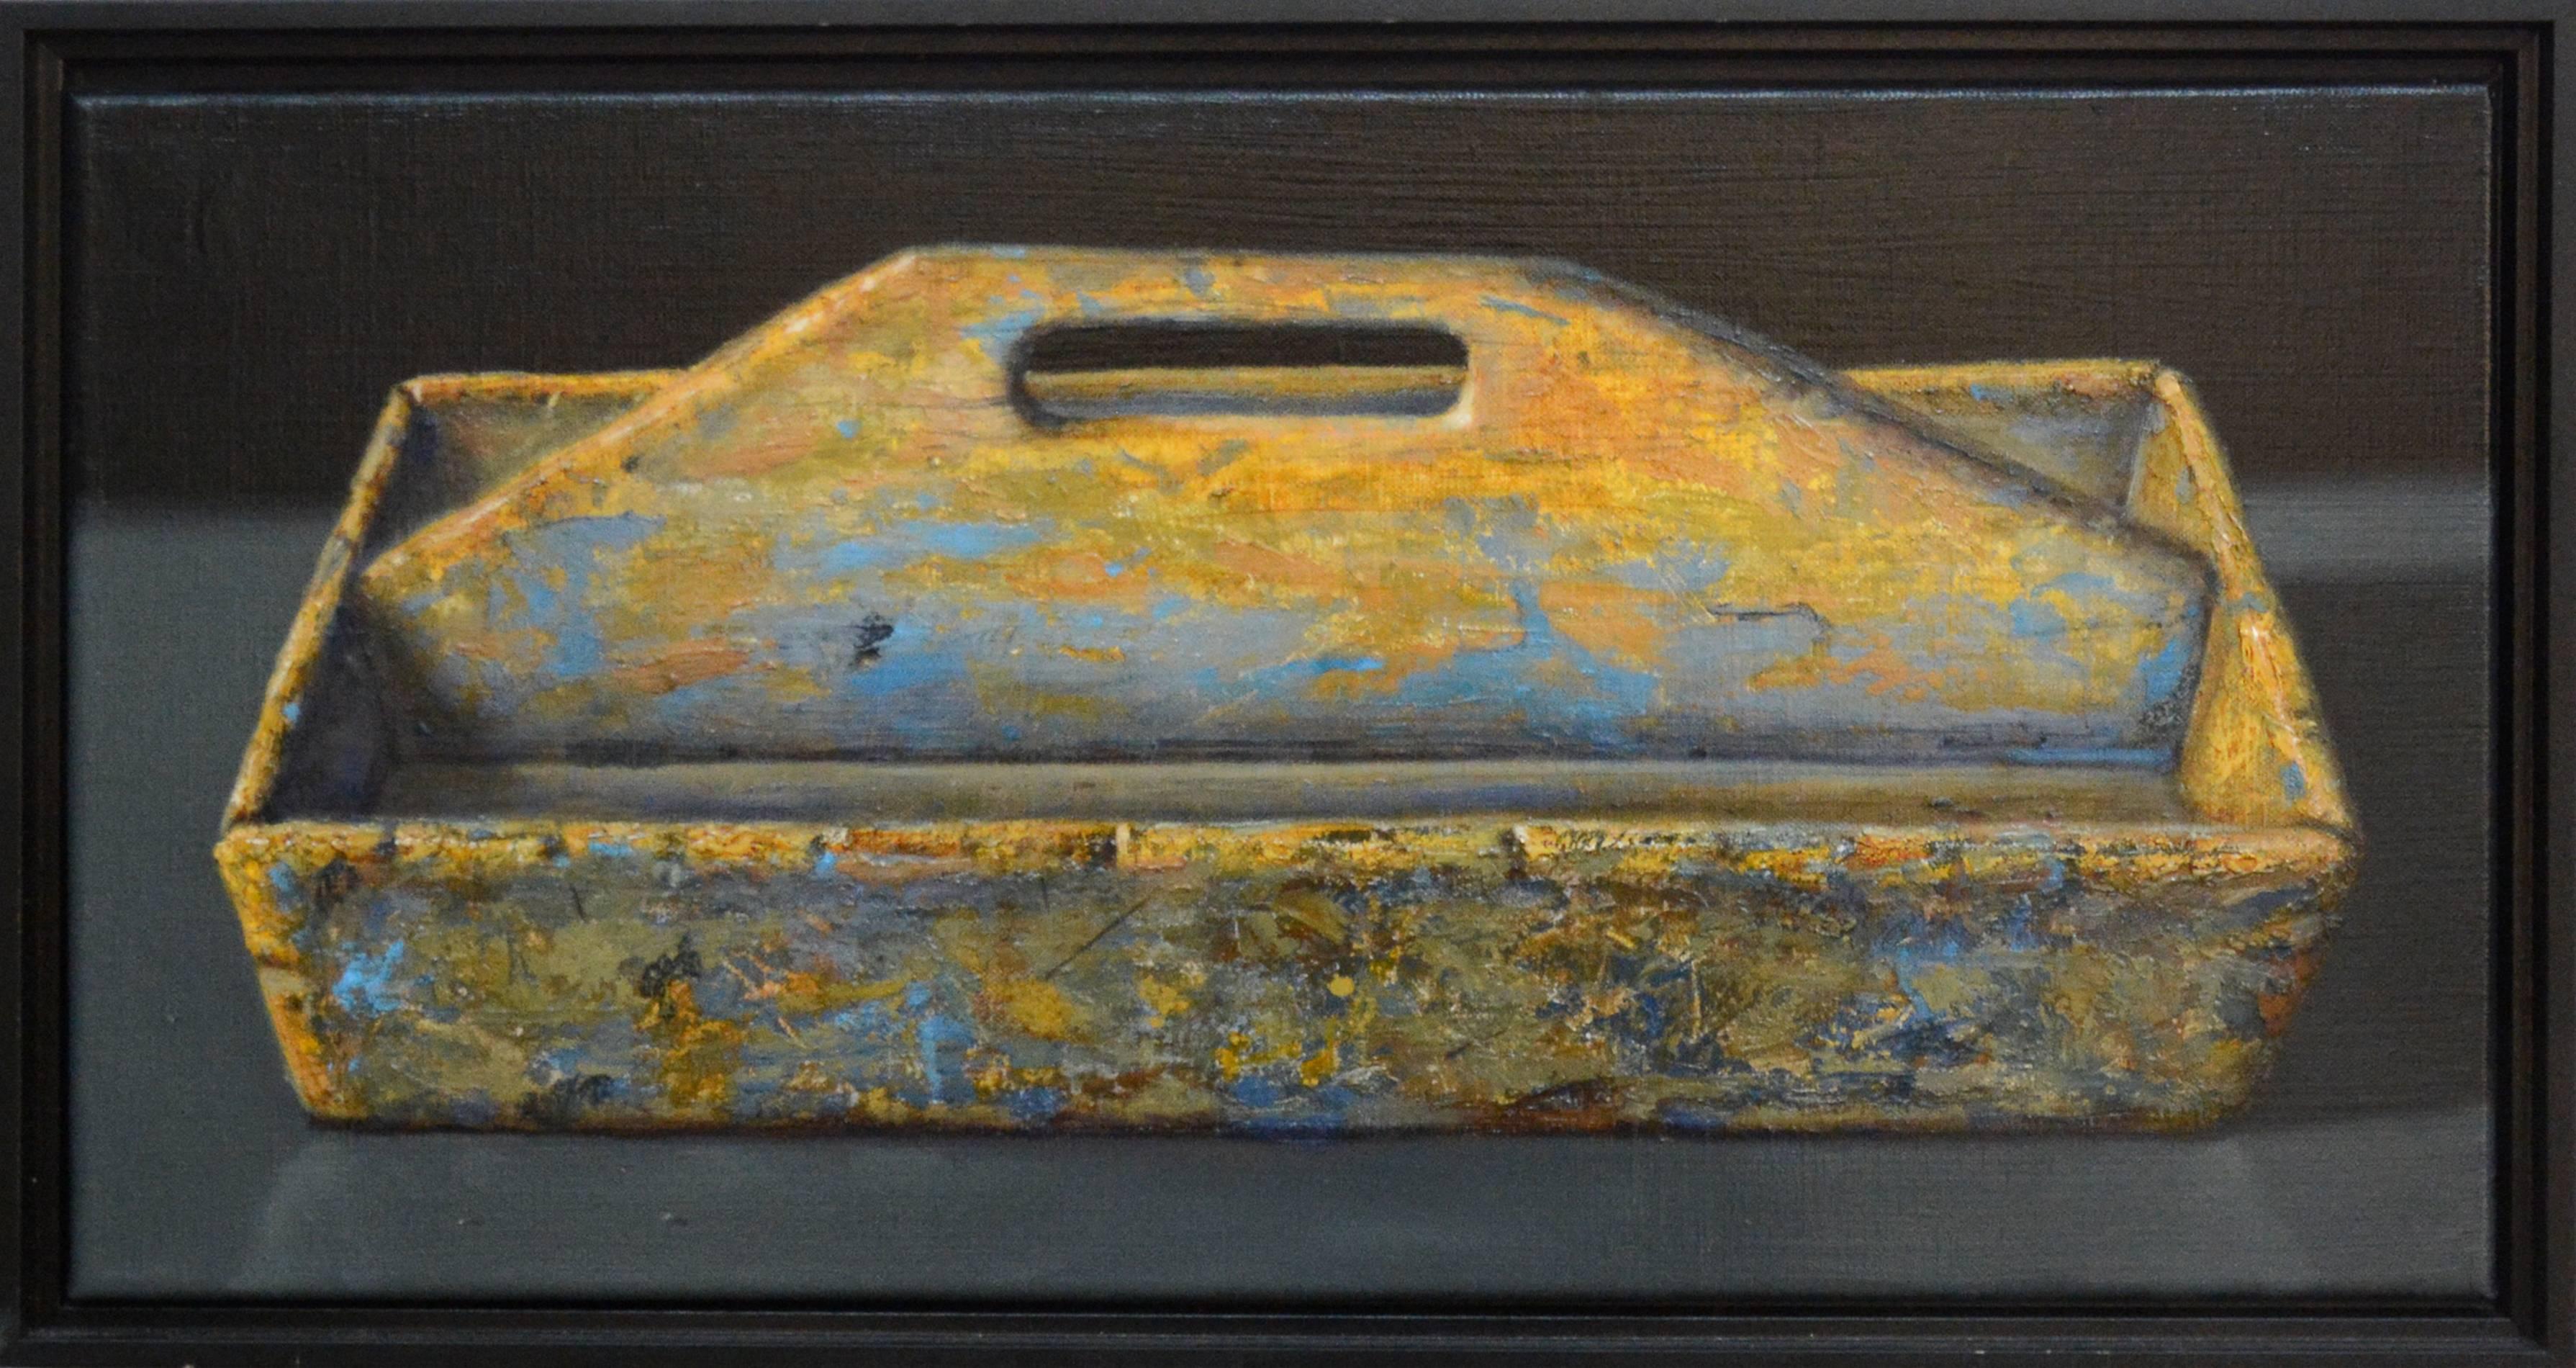 Ciba Karisik Still-Life Painting - Cutlery Box - rustic, vivid detail, realist, still-life oil on linen